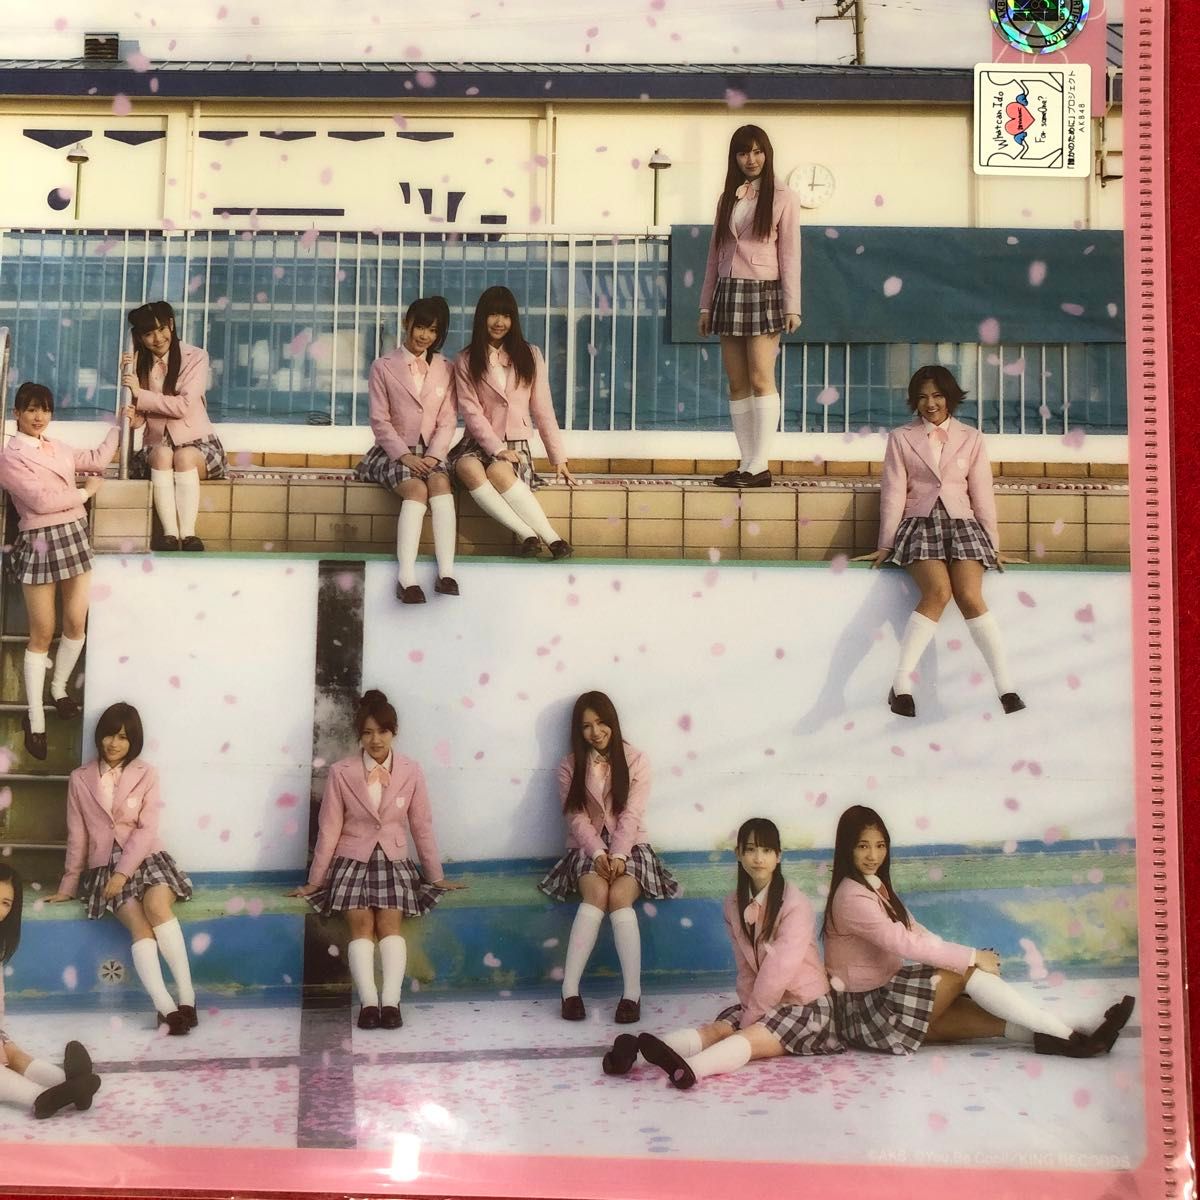 AKB48 クリアファイル&カフェショップ　コースターファイル【未開封、未使用】